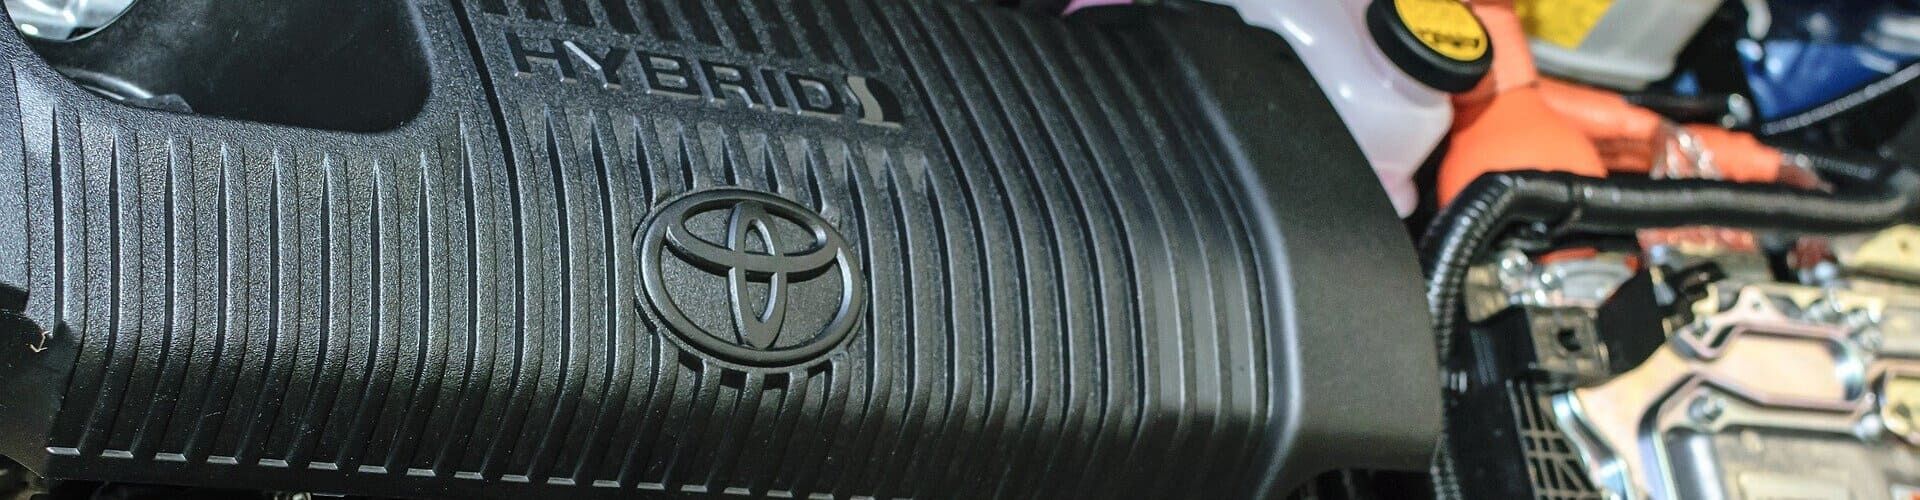 Todo lo que sabemos en Total Renting del nuevo vehículo Toyota Prius 5